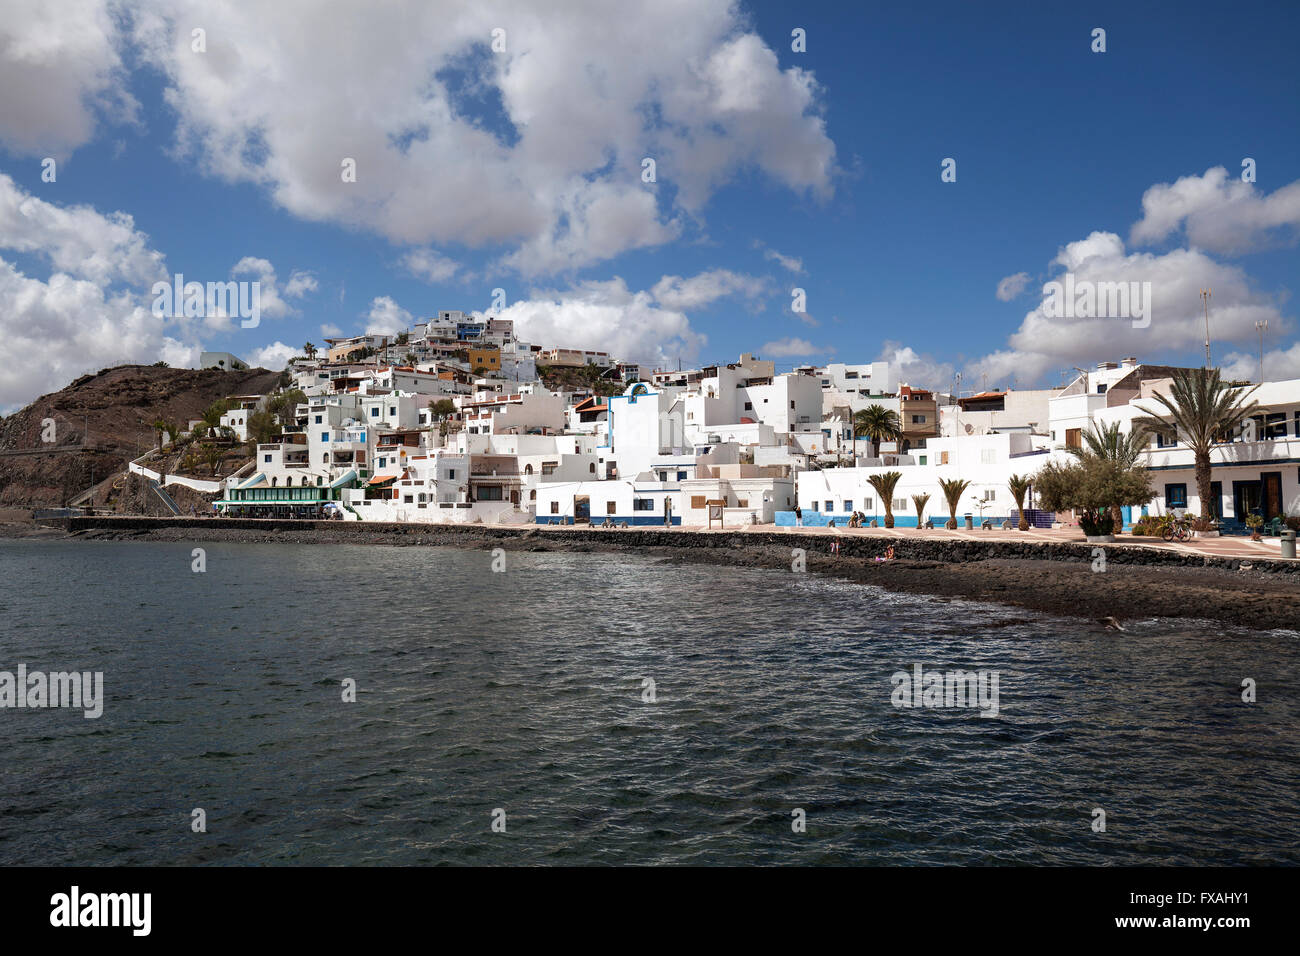 Village de pêcheurs de Las Playitas, Fuerteventura, Îles Canaries, Espagne Banque D'Images